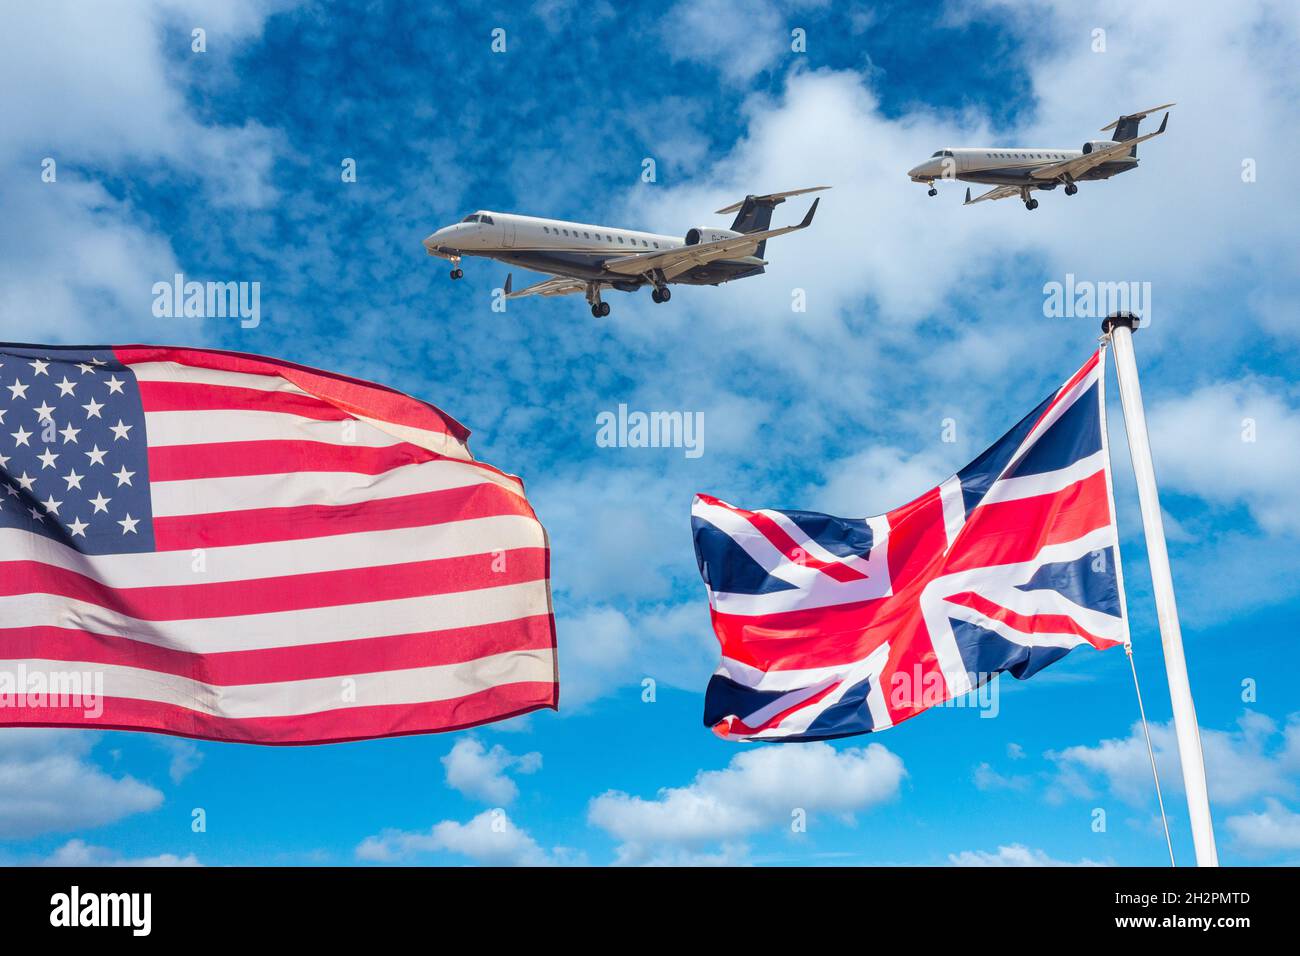 Drapeaux des États-Unis et du Royaume-Uni avec jets privés contre le ciel bleu.Industrie aéronautique, réchauffement climatique, accords commerciaux, pollution de l'air, interdiction de vol Covid... concept. Banque D'Images